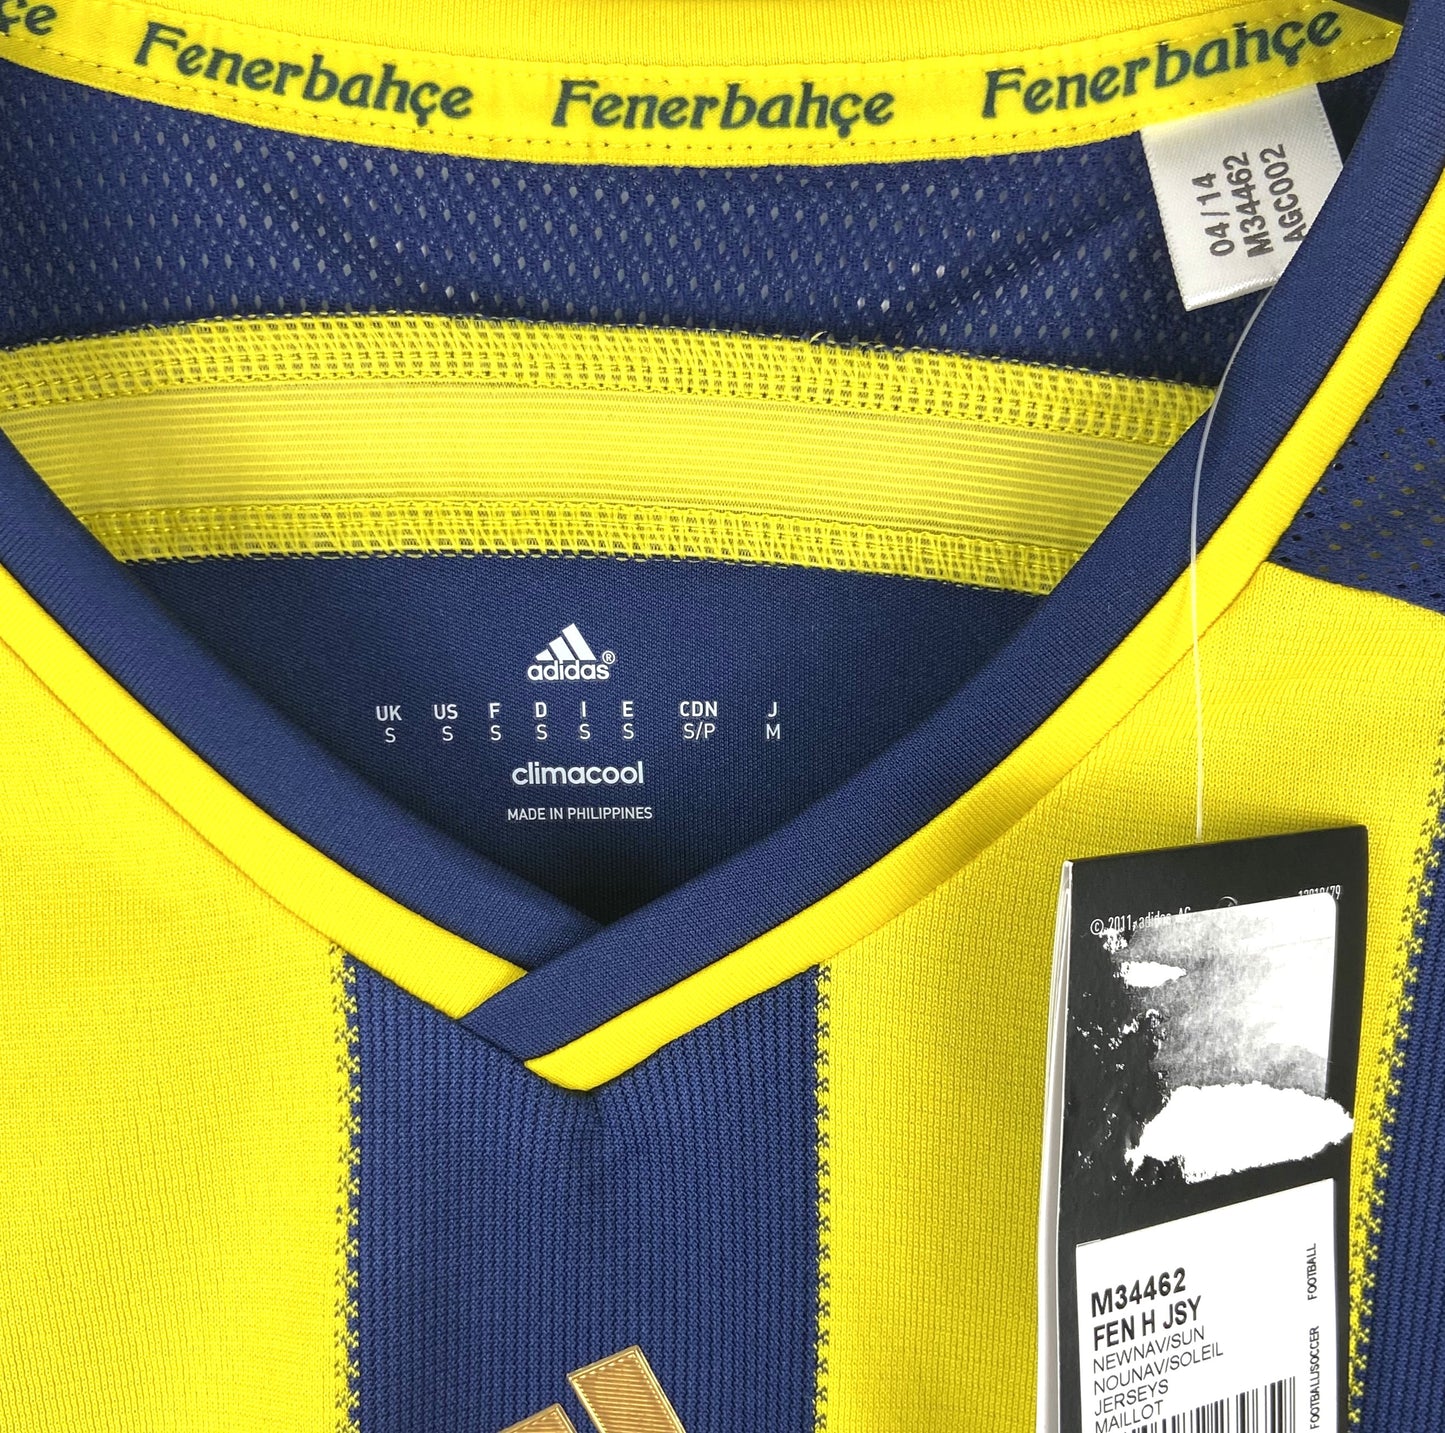 BNWT 2014 2015 Fenerbahce Adidas Home Football Shirt Men's Small